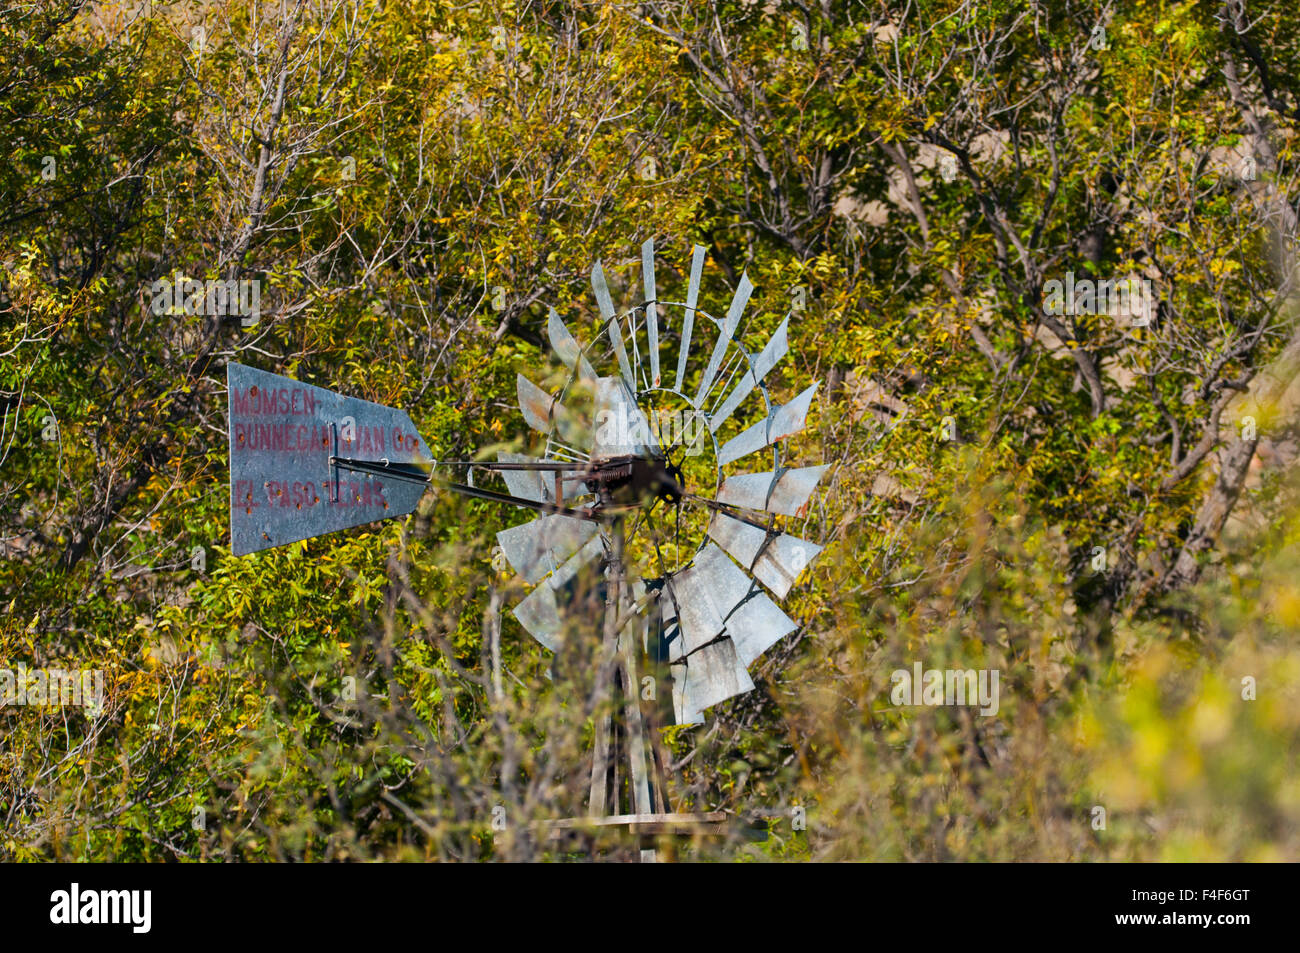 USA, Texas, Big Bend National Park, Sam Nail Ranch Windmill. Stock Photo